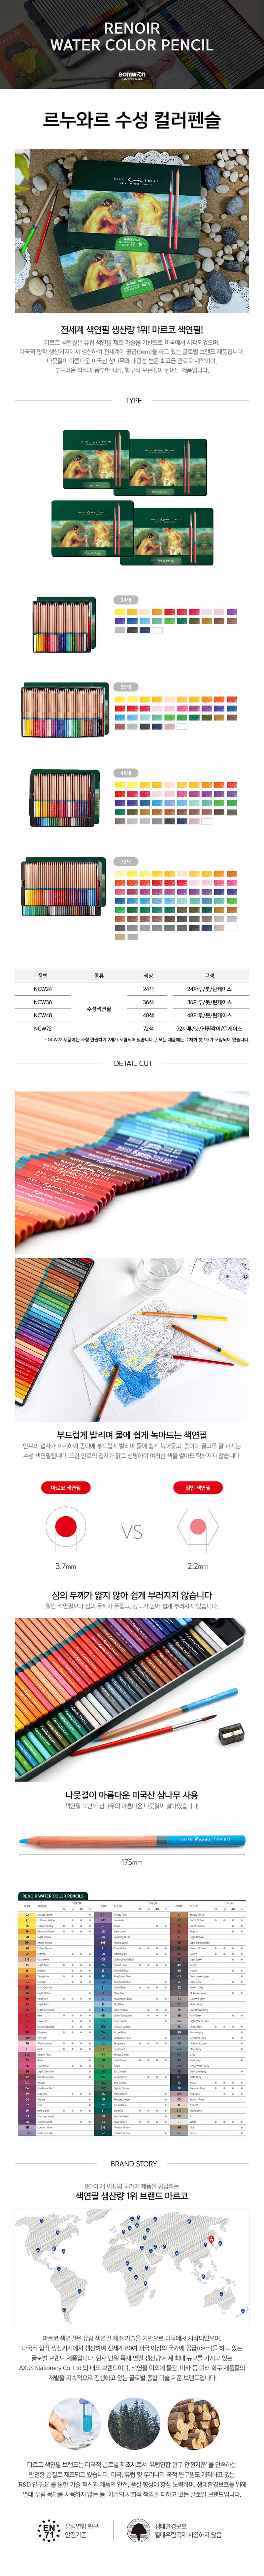 마르코 르누아르 수채색연필 24색, 36색, 48색, 72색 틴케이스 [옵션선택]